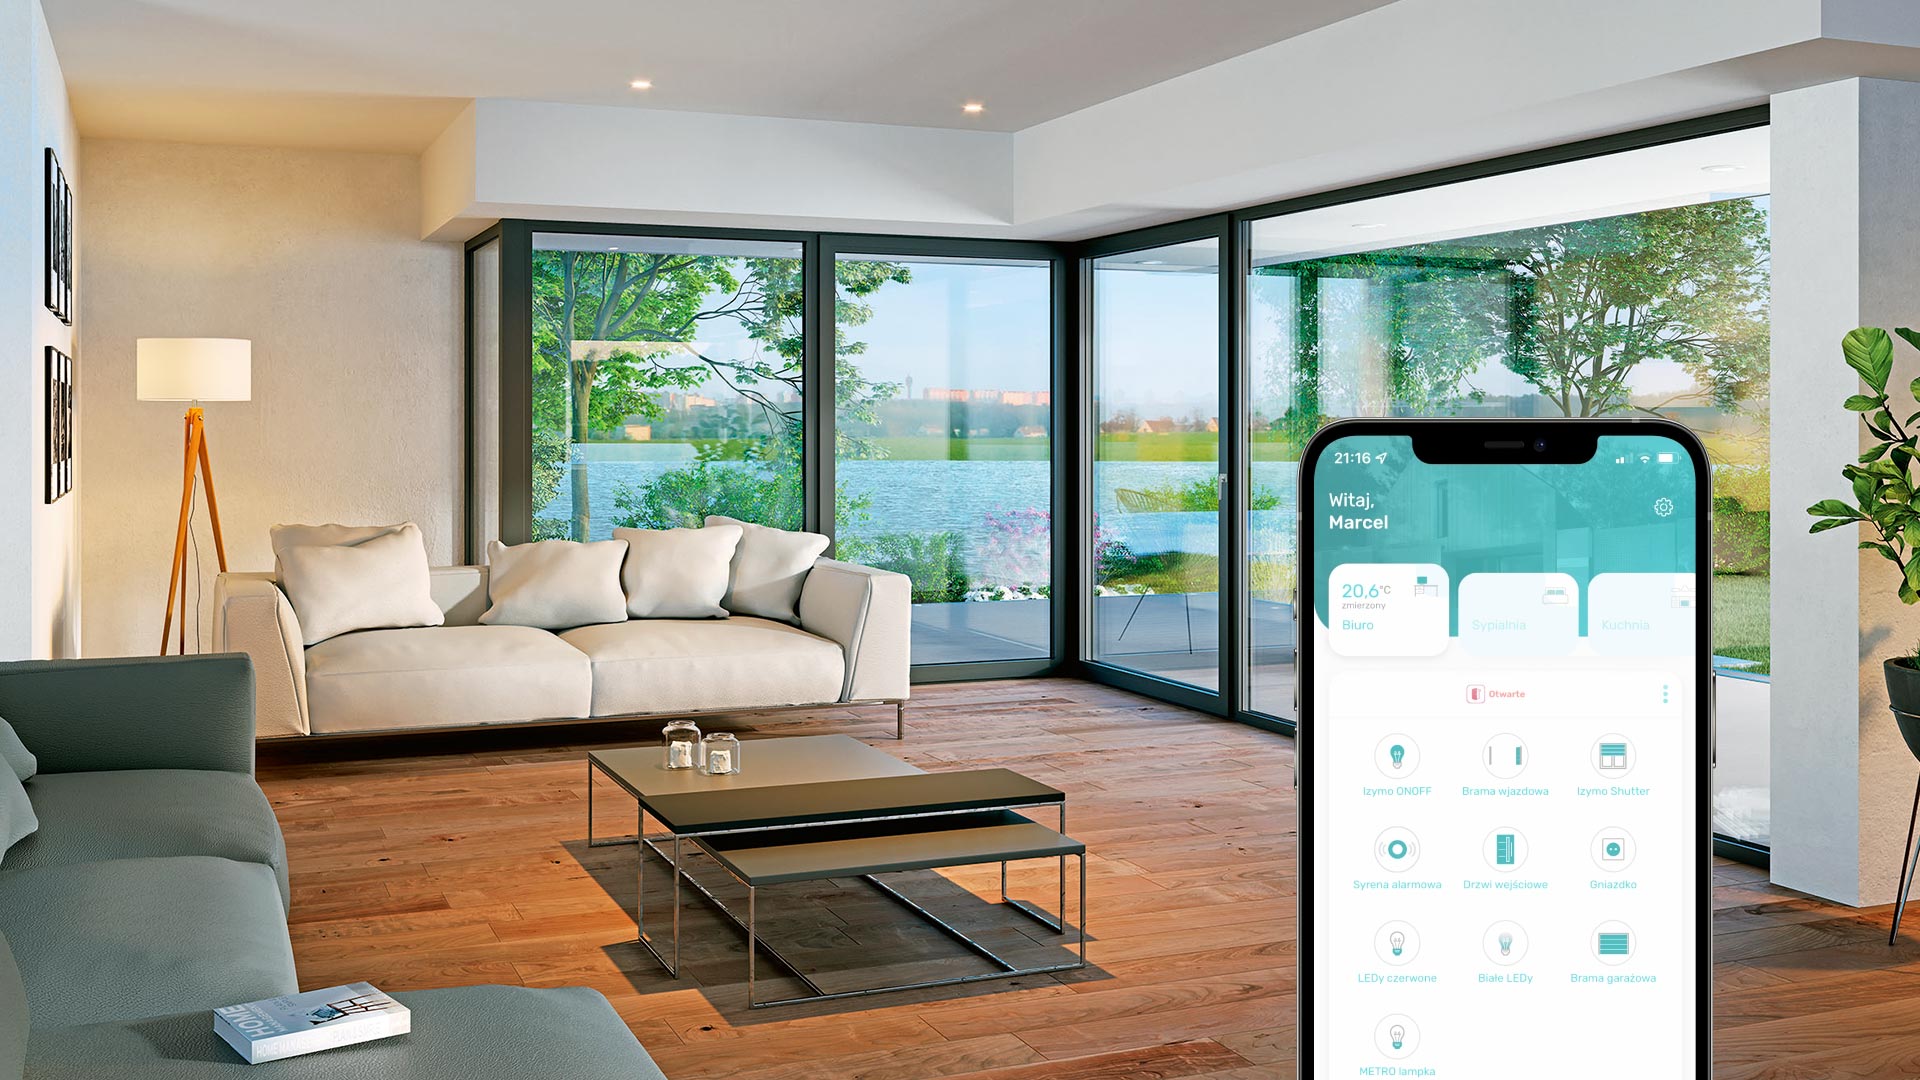 Zdjęcie przedstawiające wnętrze salonu z oknami przesuwnymi oraz aplikację Smart Connected.